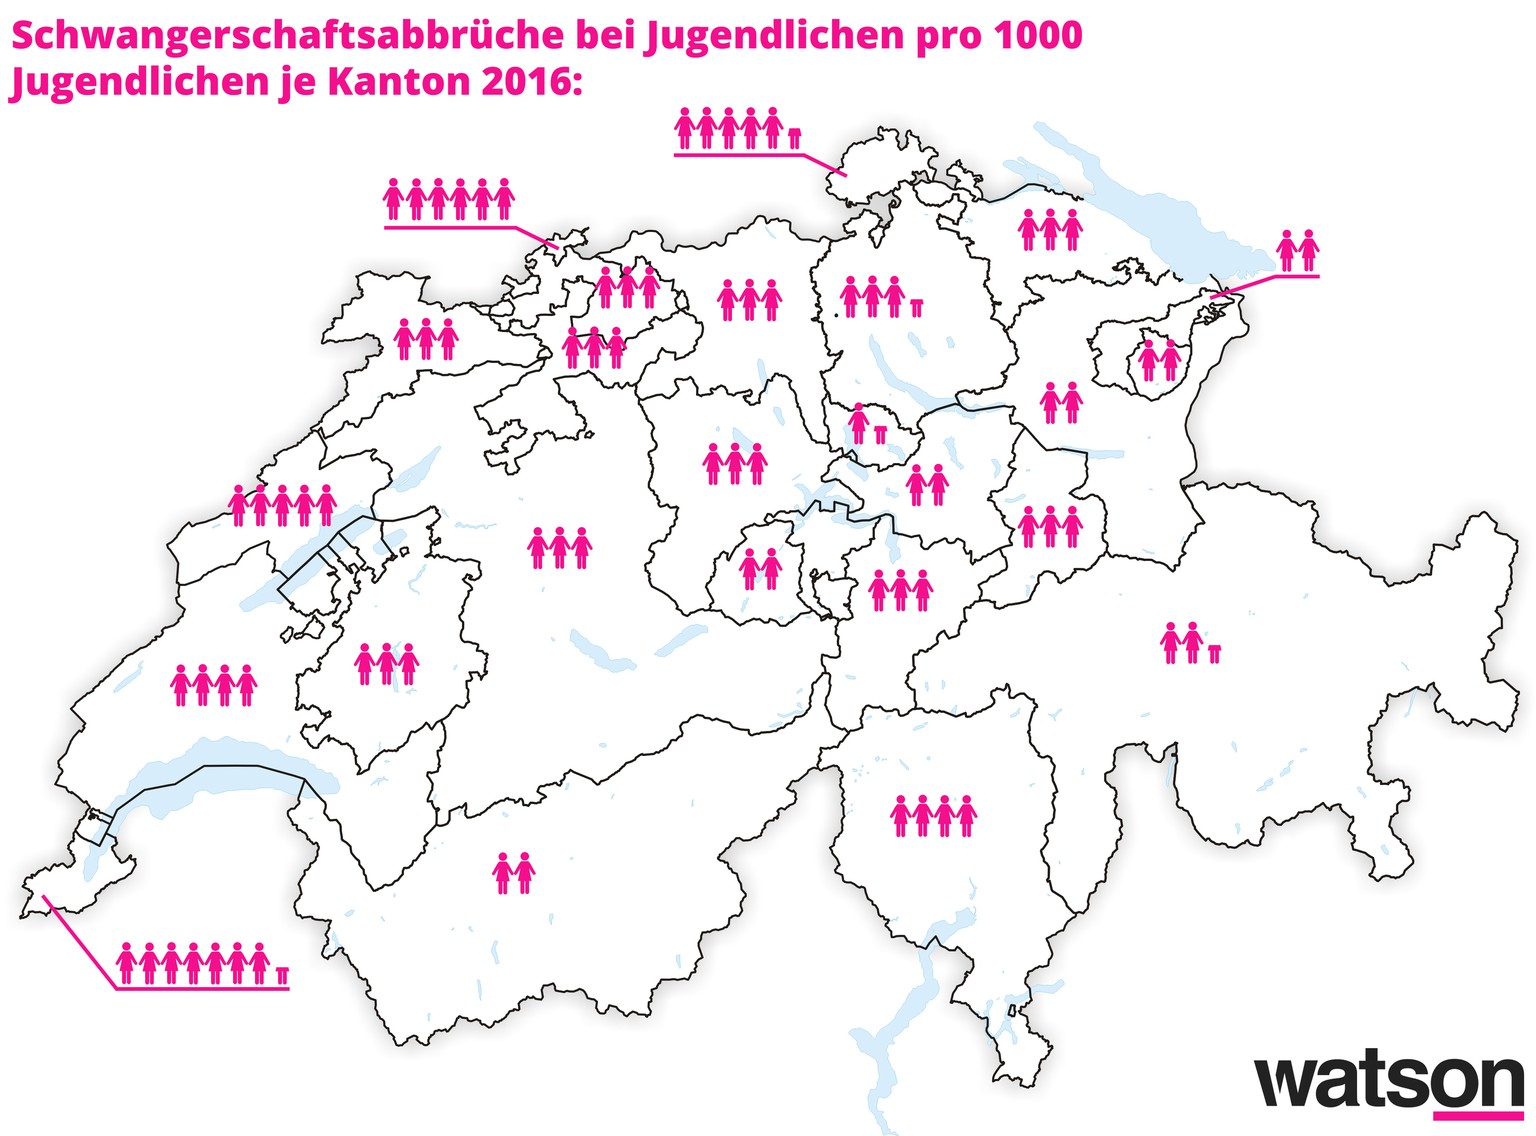 Lesebeispiel: Pro 1000 Zürcher Jugendlichen gab es 2016 3,5 Schwangerschaftsabbrüche.